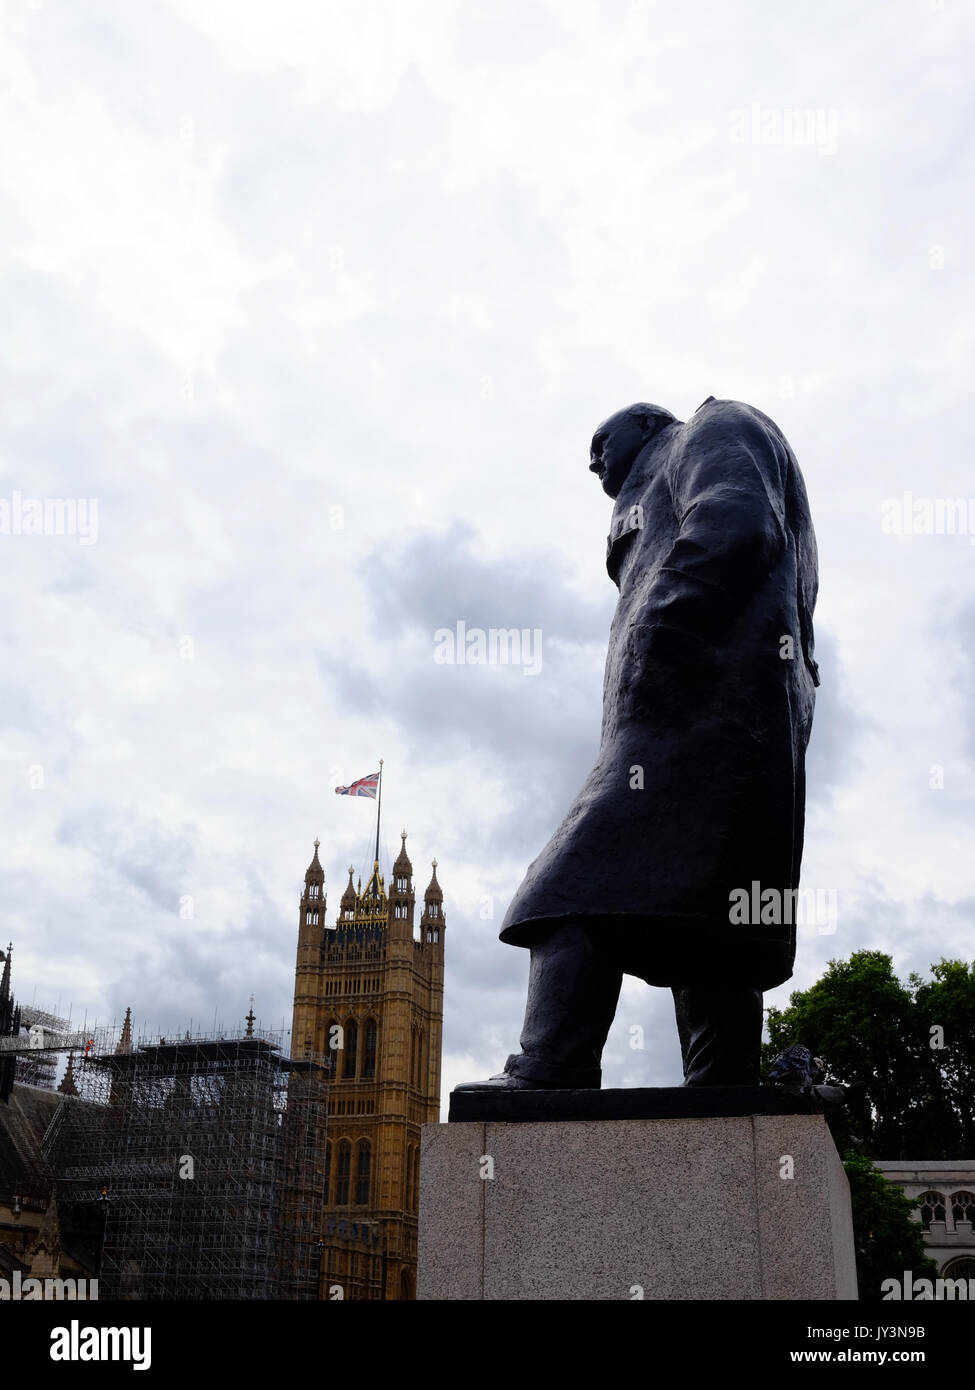 La estatua de Winston Churchill en Parliament Square, Londres, mirando por encima de las Casas del Parlamento, el Big Ben como pasa en silencio. Foto de stock